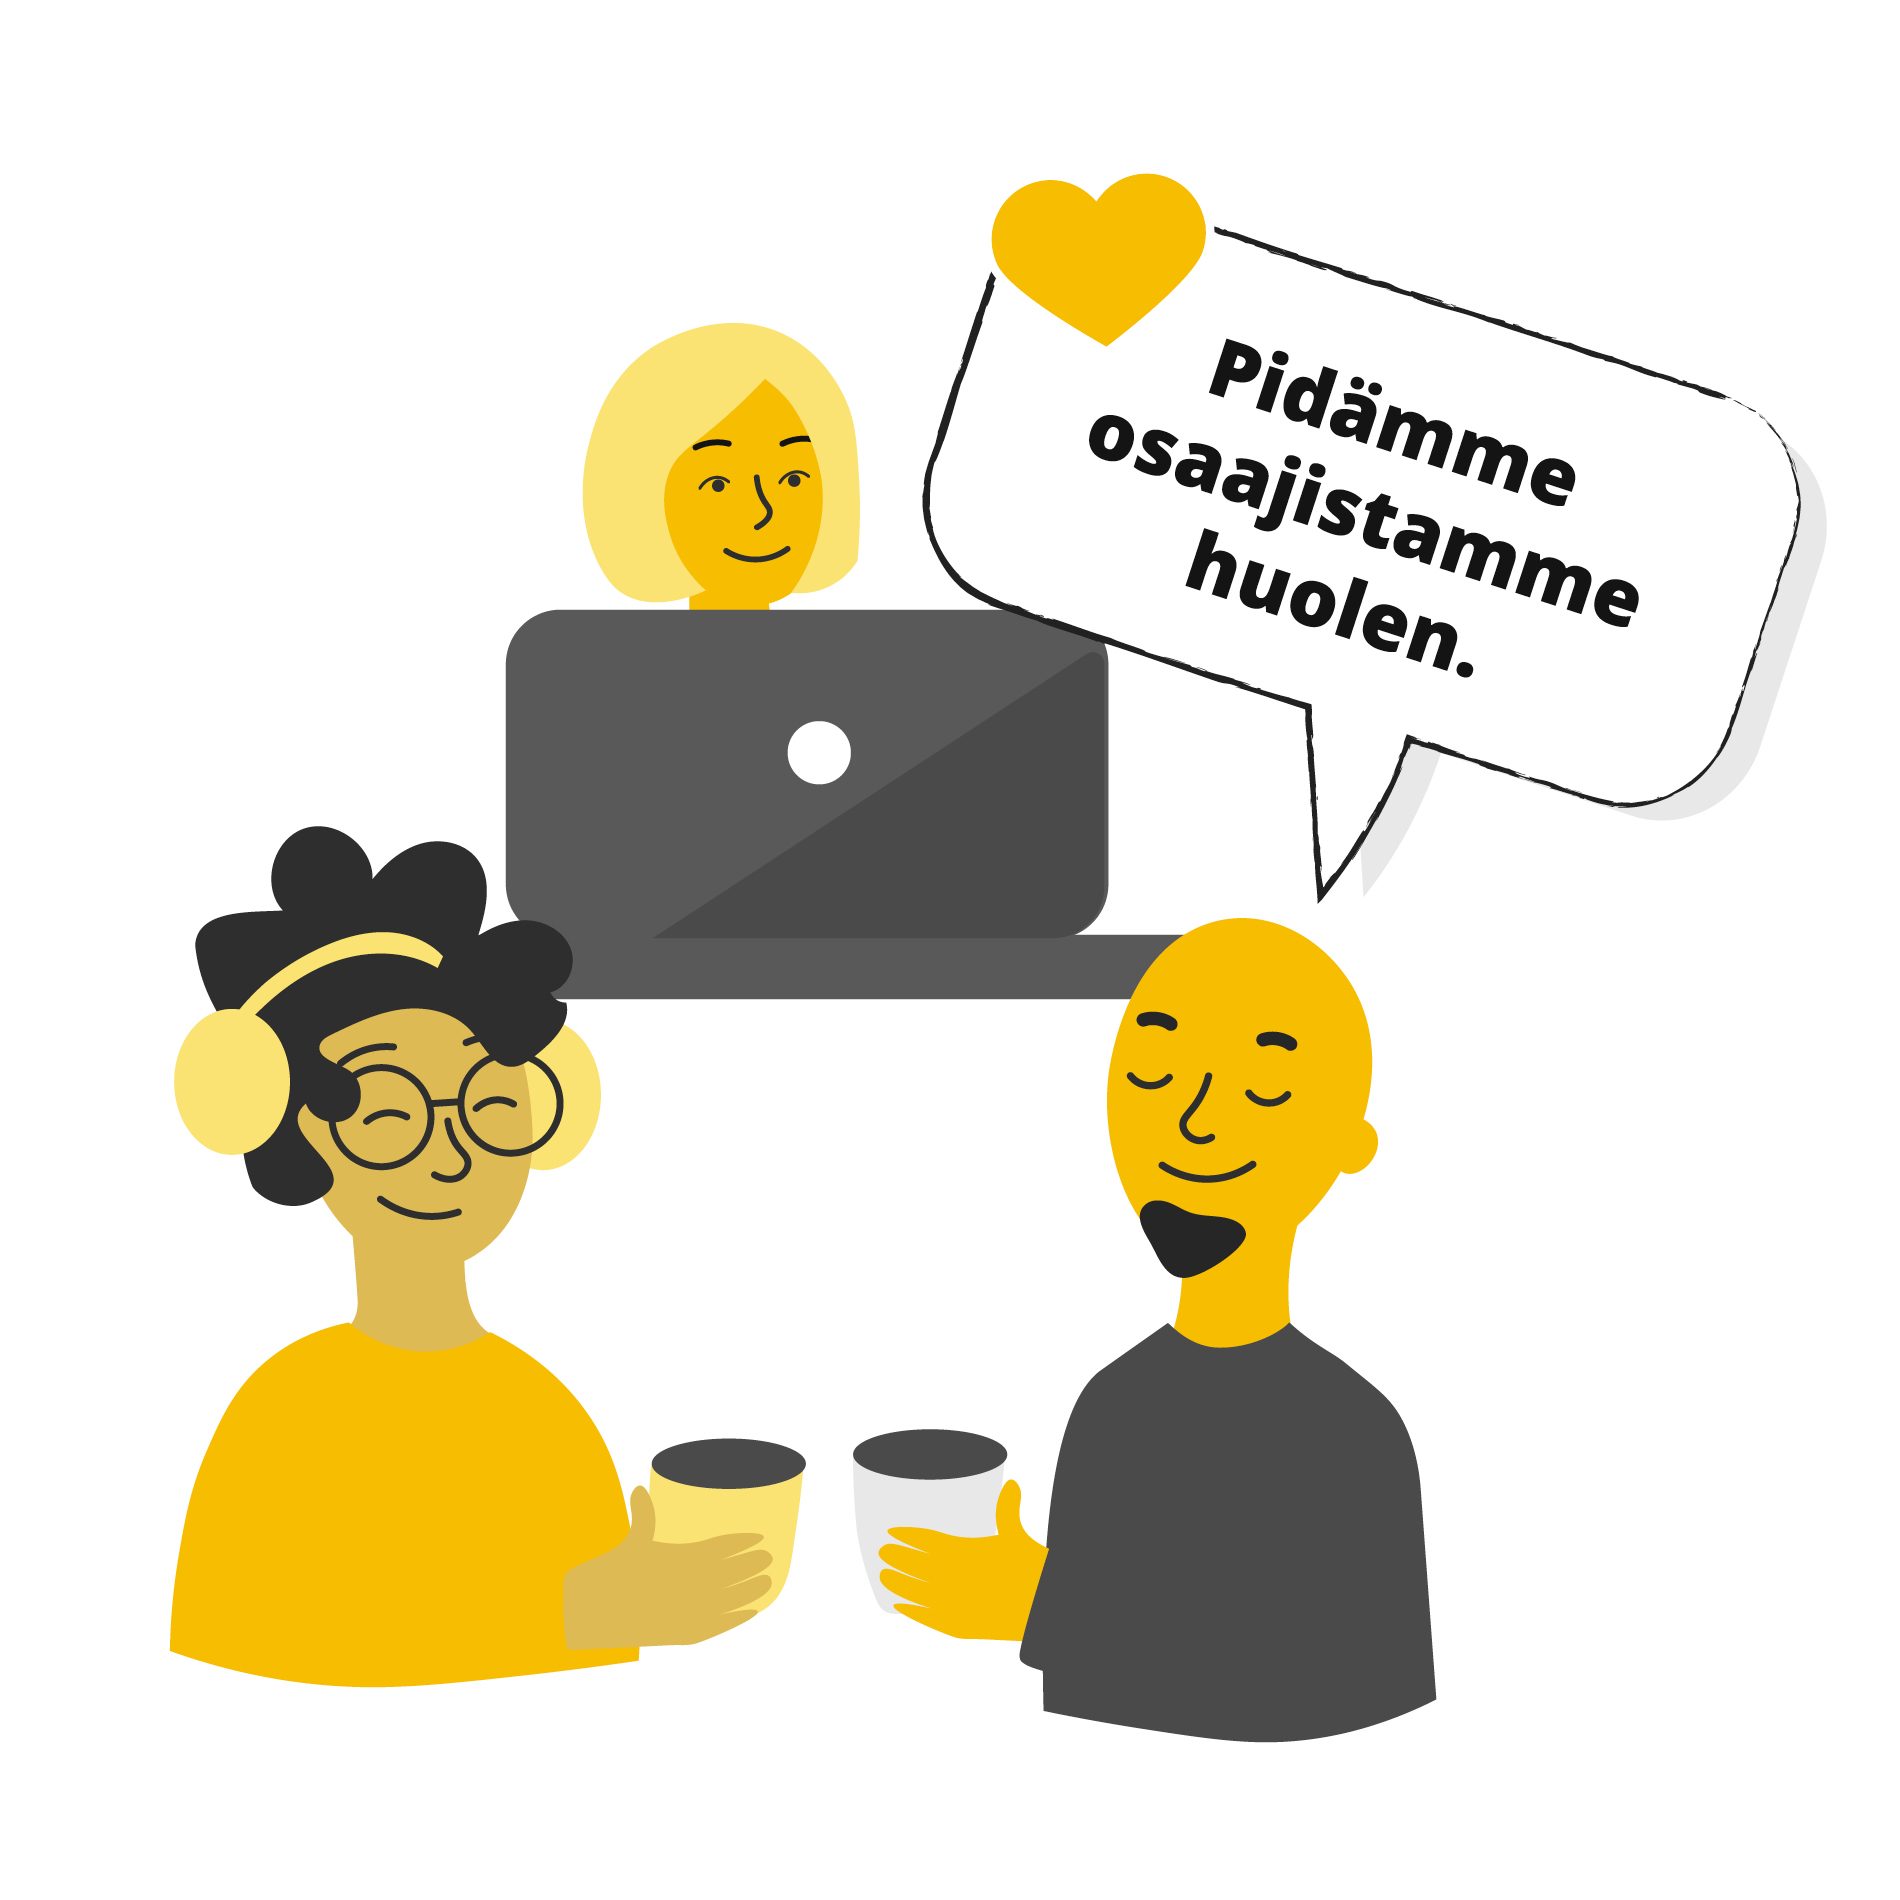 Piirroskuva, jossa on kaksi ihmistä etualalla juttelemassa ja kolmas taaempana tietokoneen kanssa, ja puhekuplassa on teksti "Pidämme osaajistamme huolen".